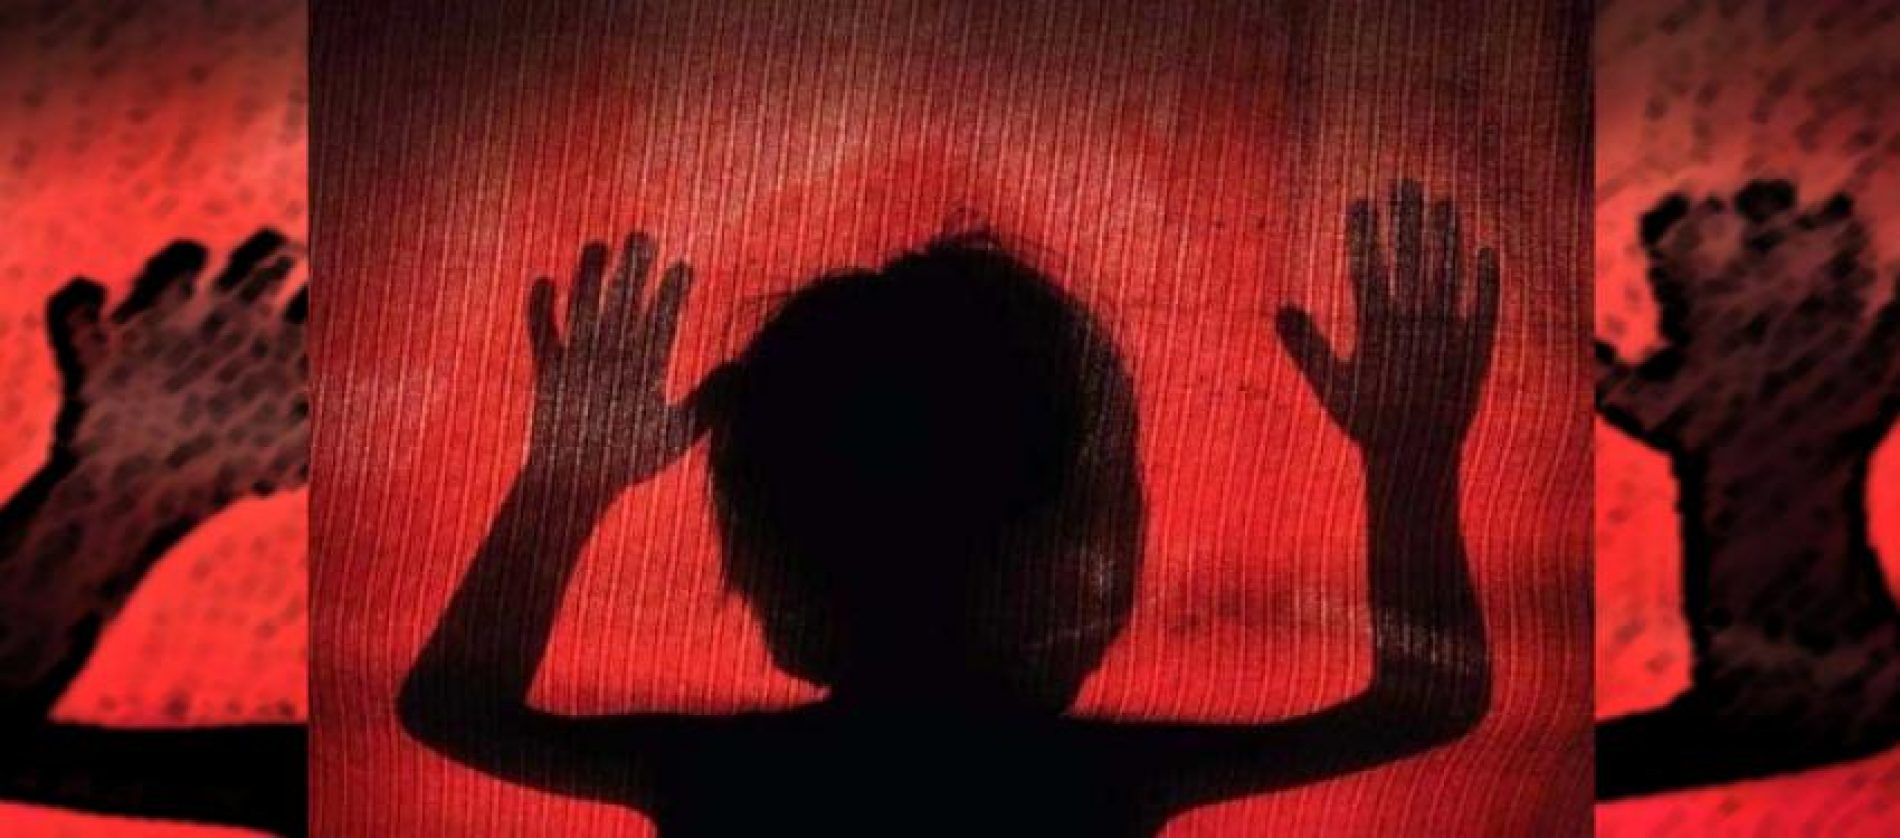 COLÔMBIA: Mulher é presa por estupro de vulnerável praticado contra menina de 10 anos